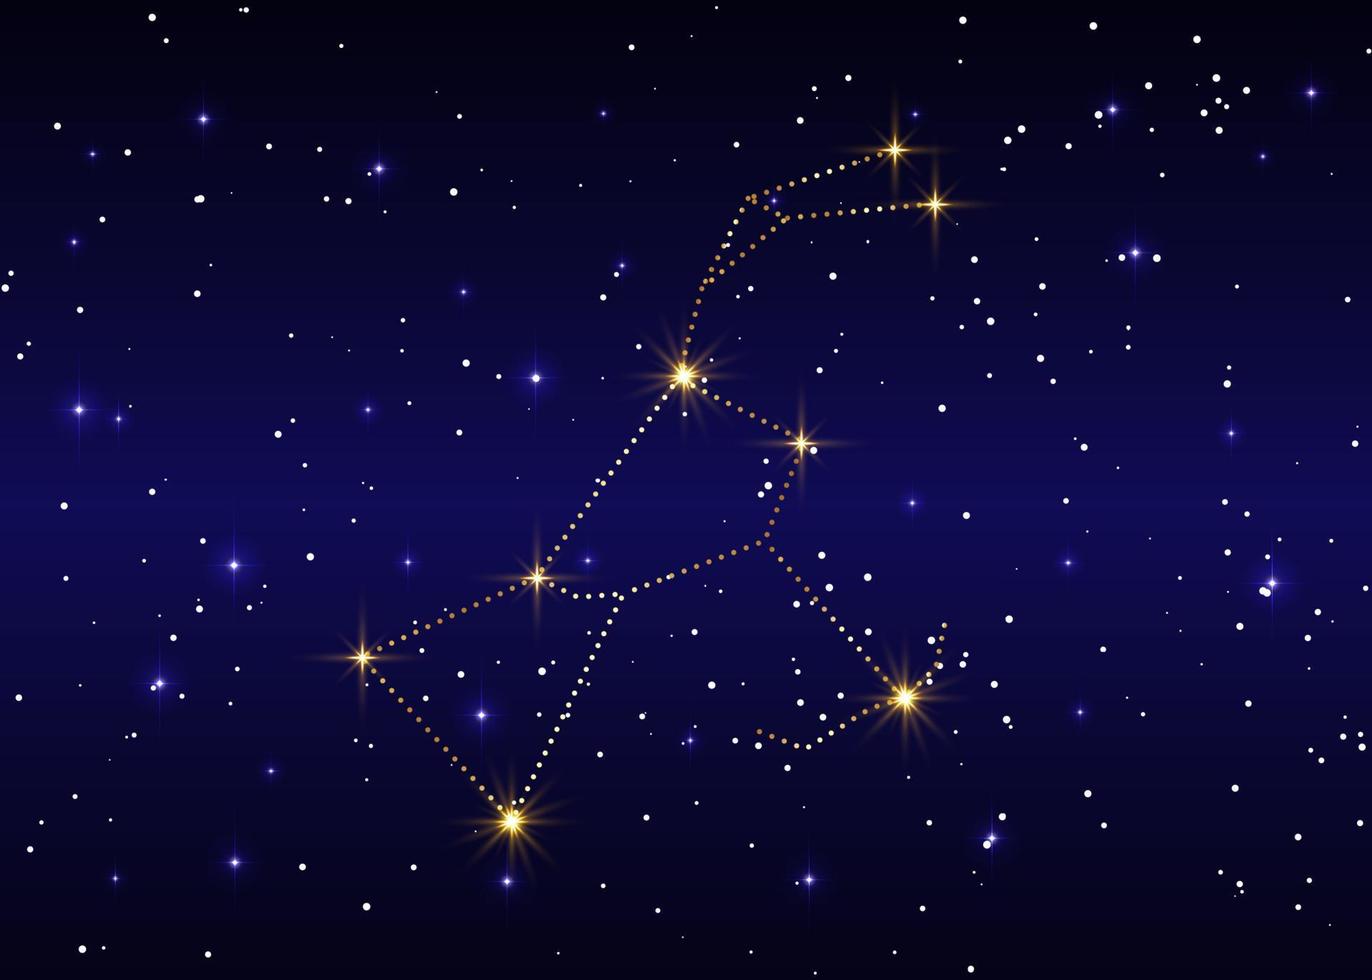 constelação de orion, ilustração vetorial contra o céu estrelado, representação de luxo em ouro no fundo azul da galáxia vetor